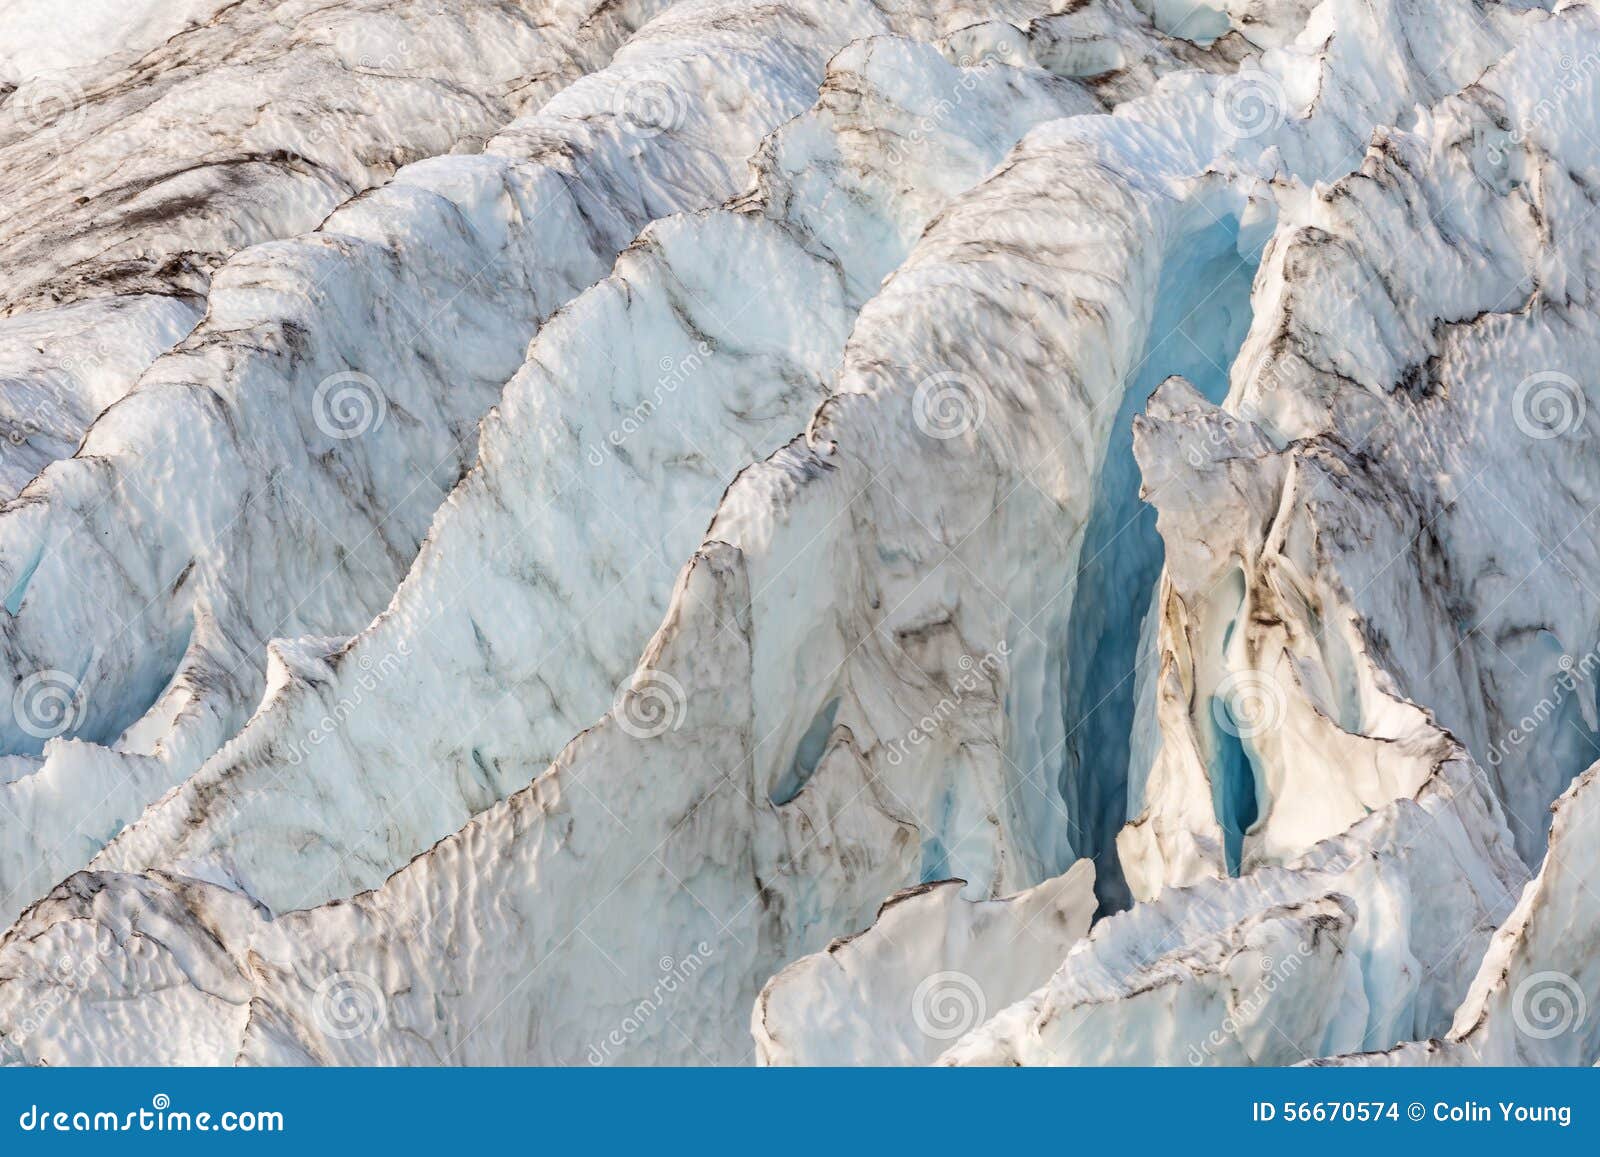 coleman glacier blue ridges